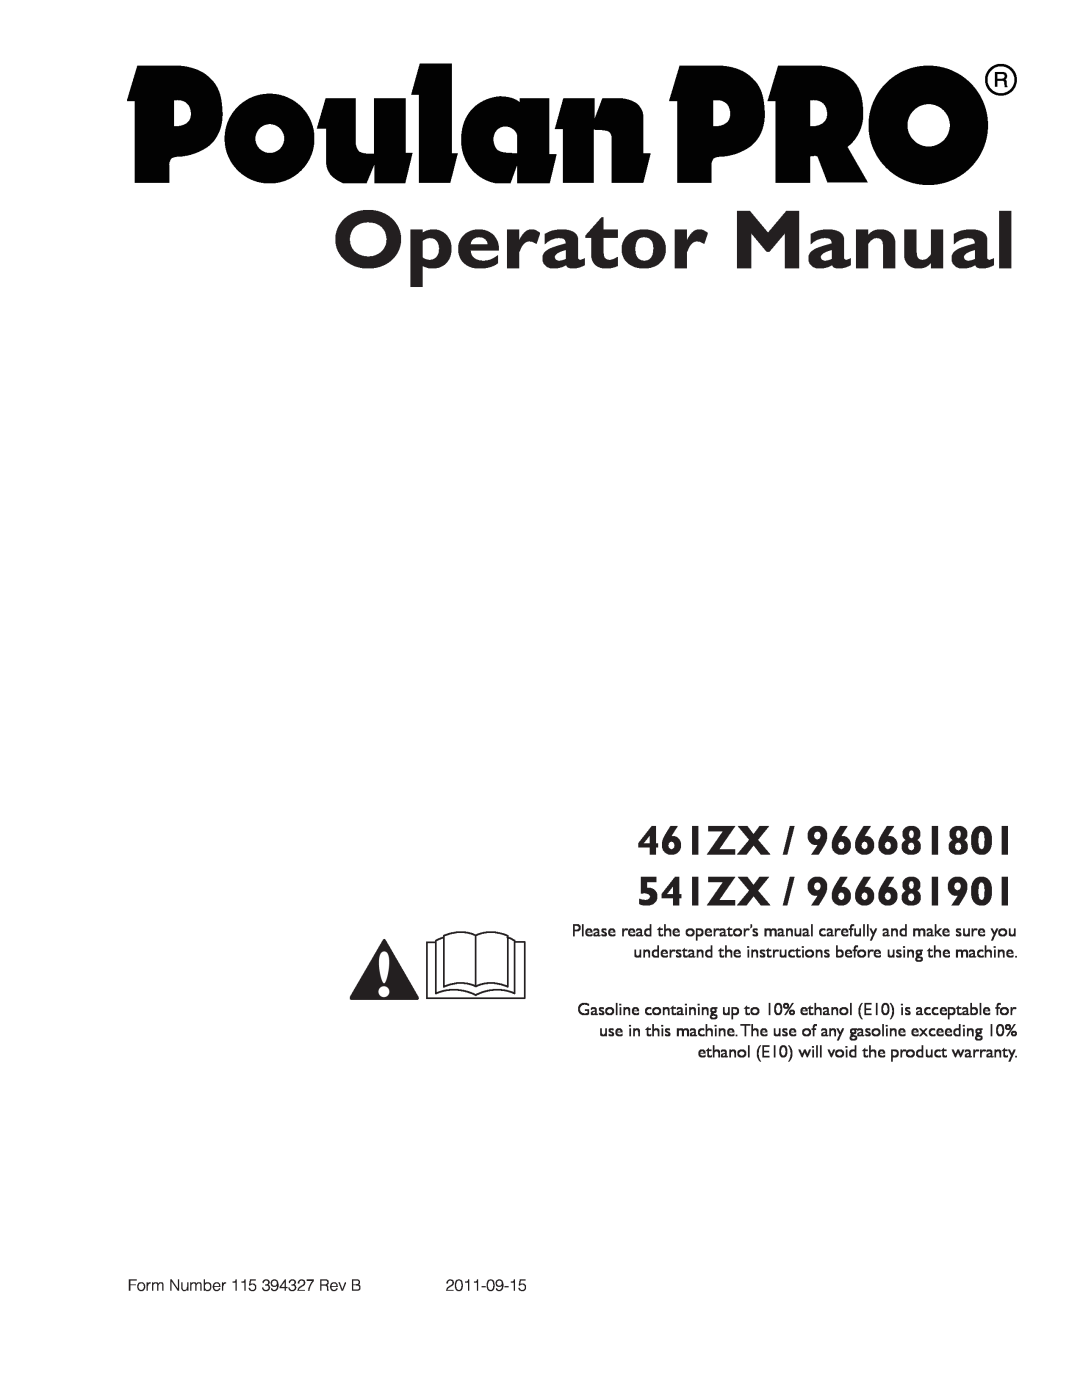 Poulan warranty Operator Manual, 461ZX / 966681801 541ZX 